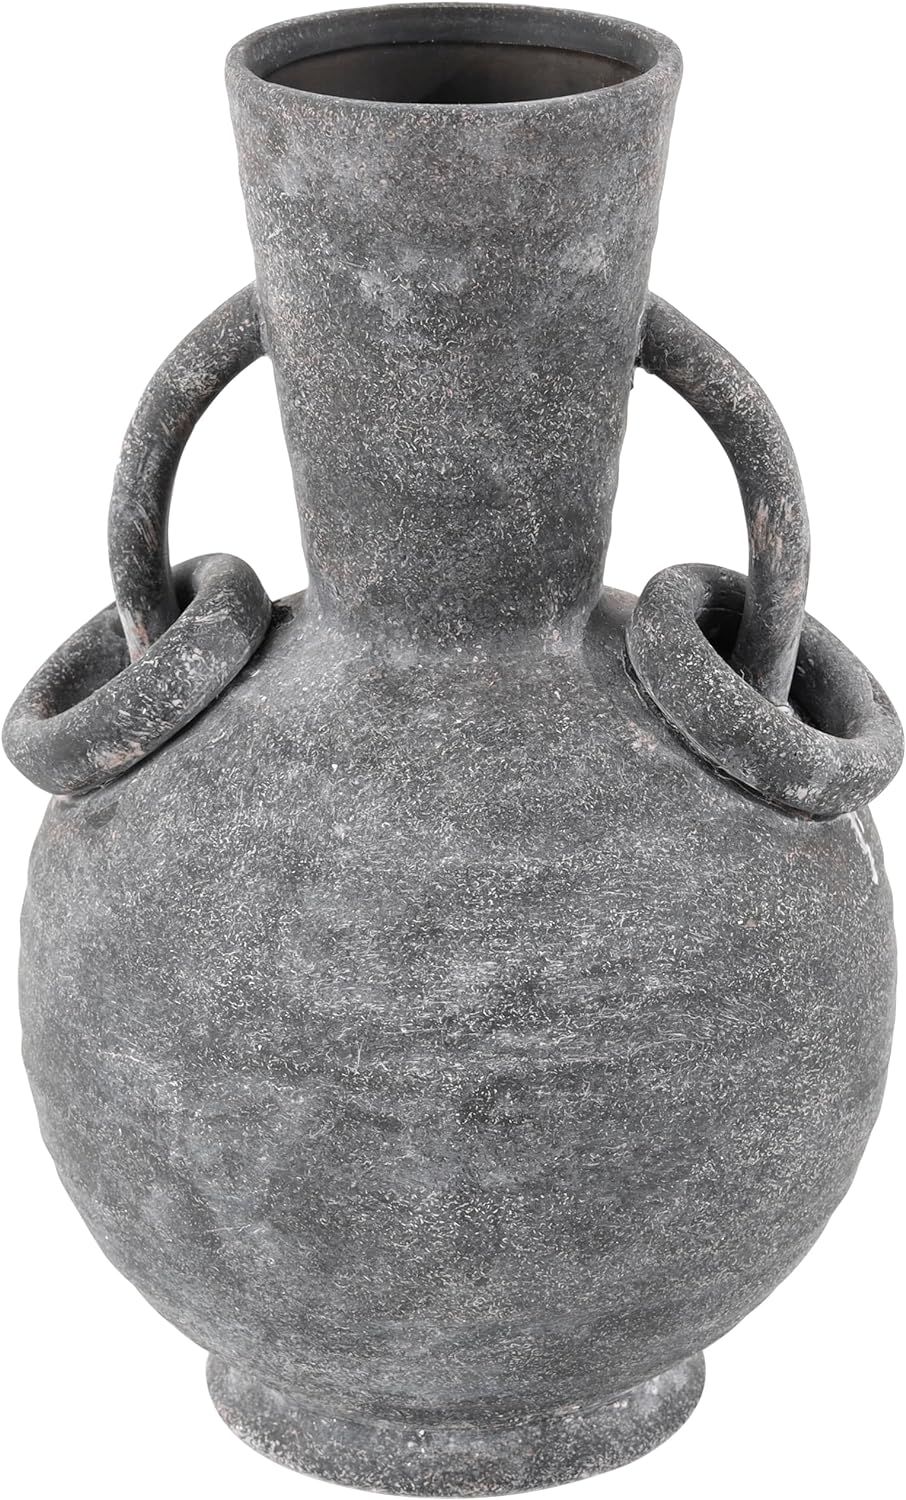 Deco 79 Ceramic Decorative Vase Textured Whitewashed Centerpiece Vase with Ring Handles, Flower V... | Amazon (US)